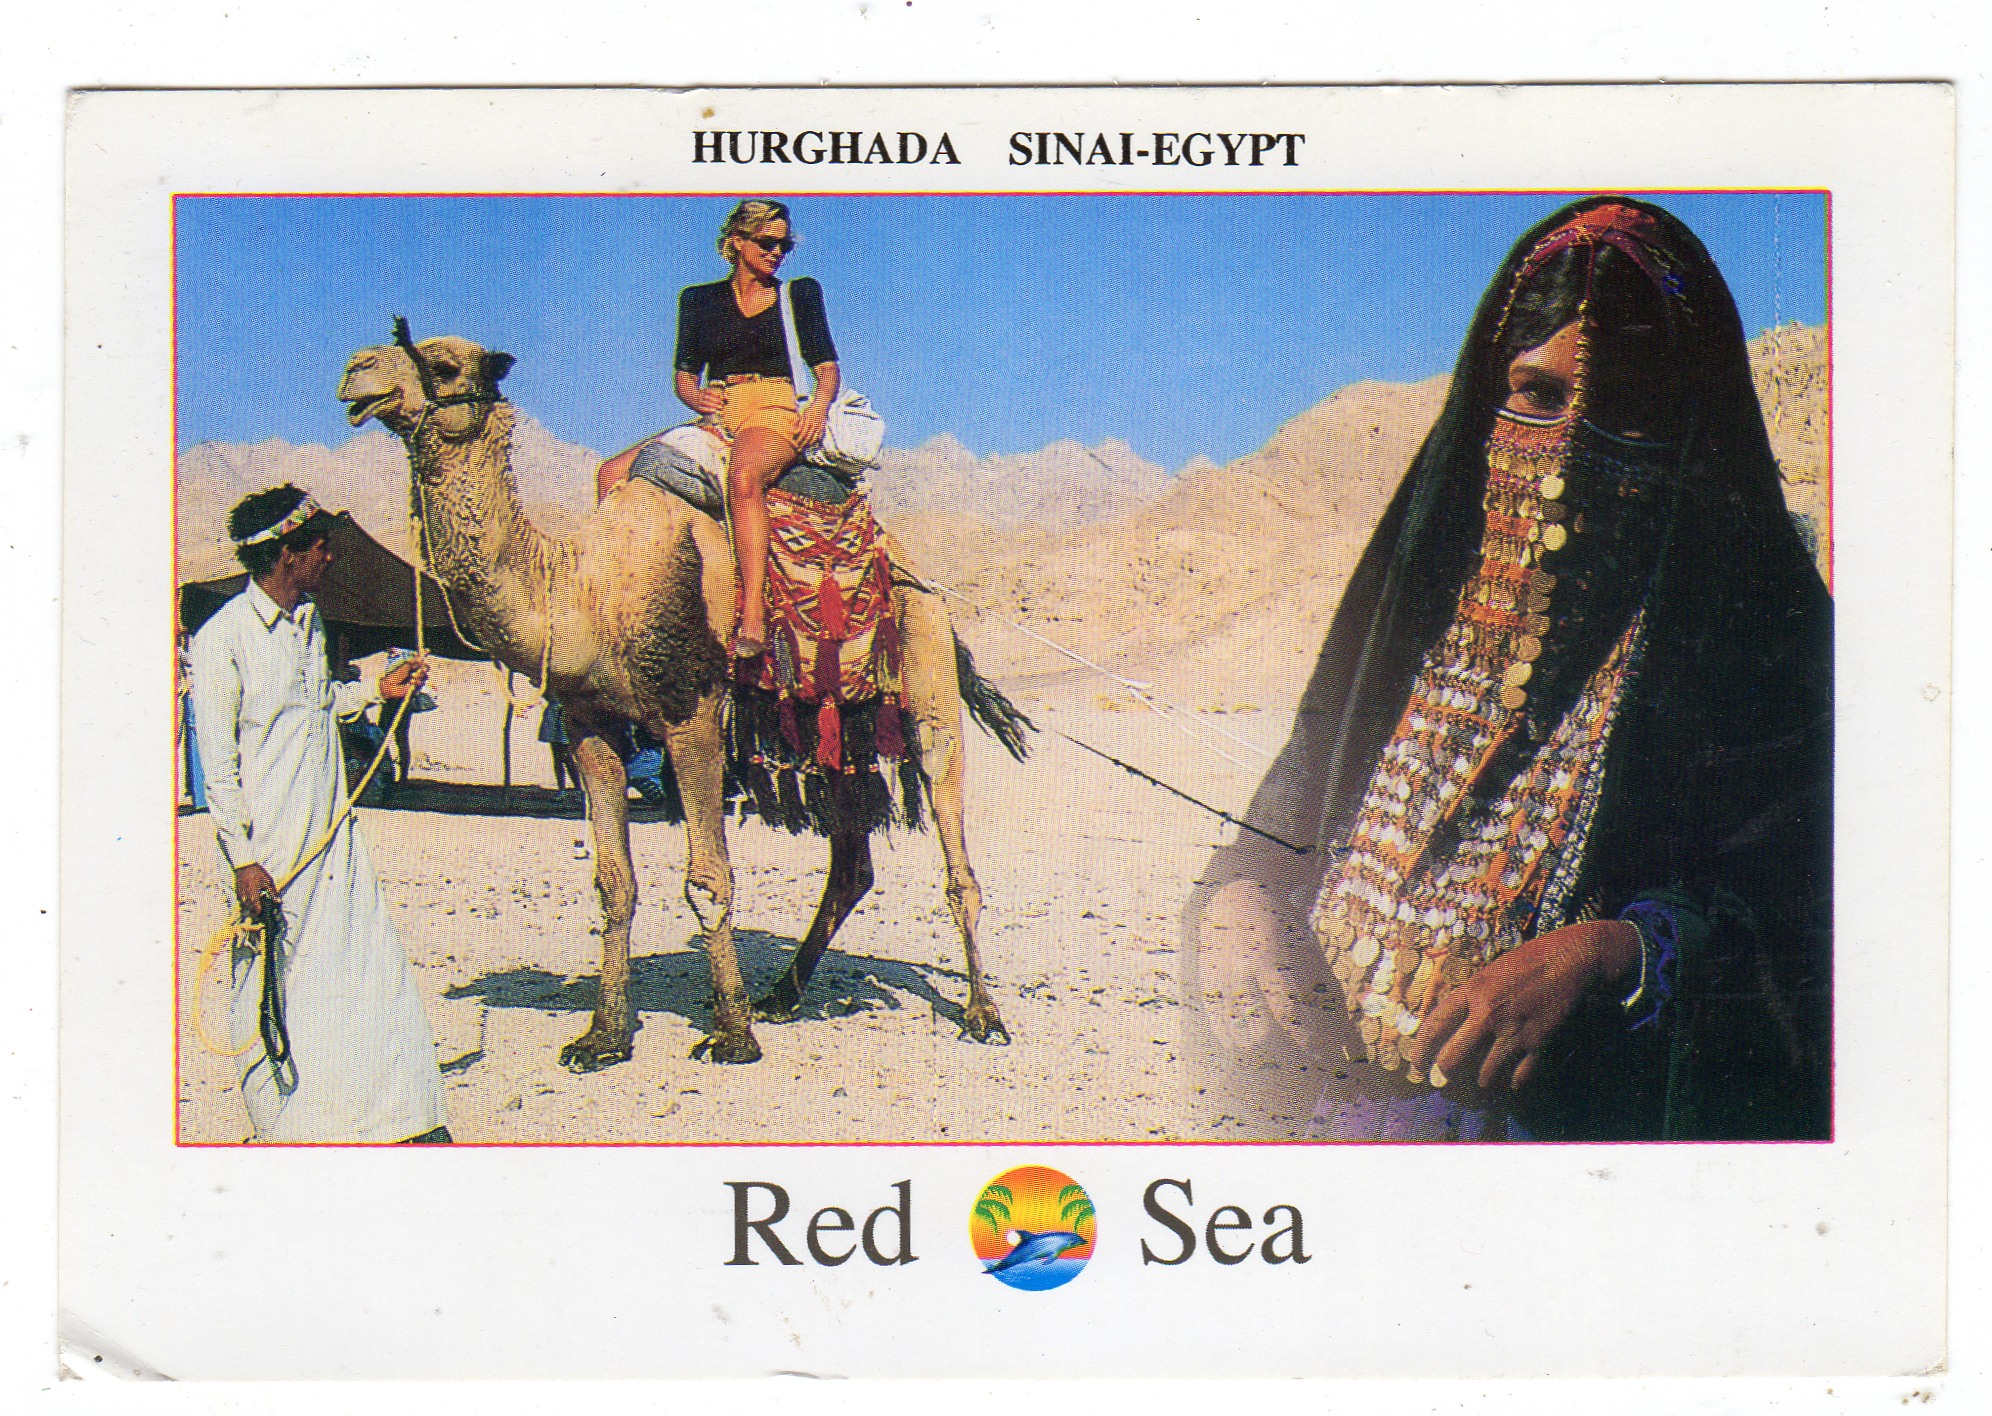 Hurghada Sinai-Egypt Red sea 2008